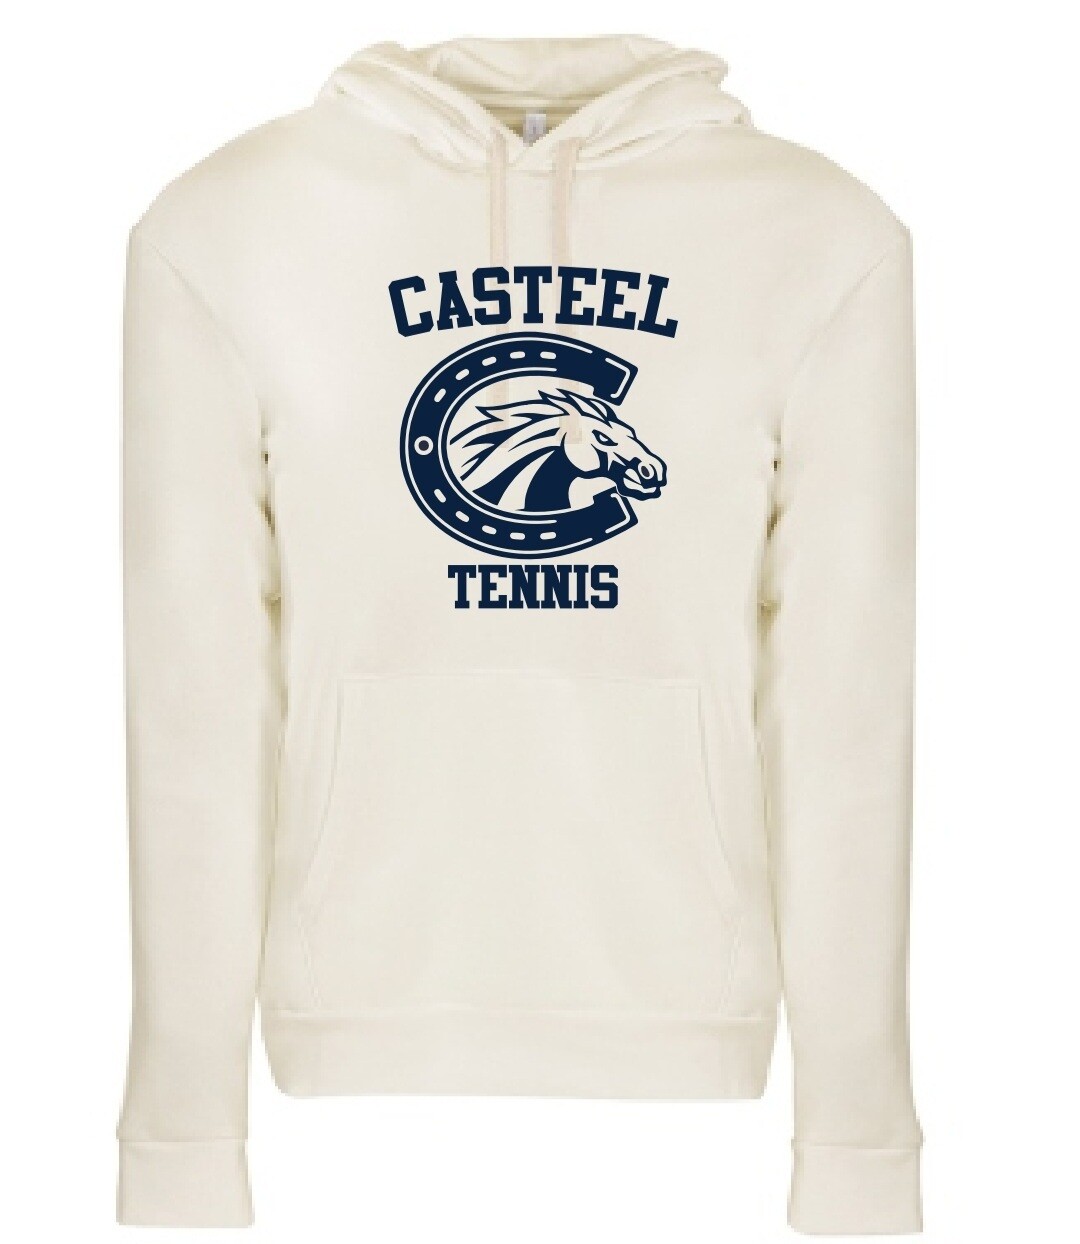 Casteel Tennis 80/20 Fleece Pullover Hoody